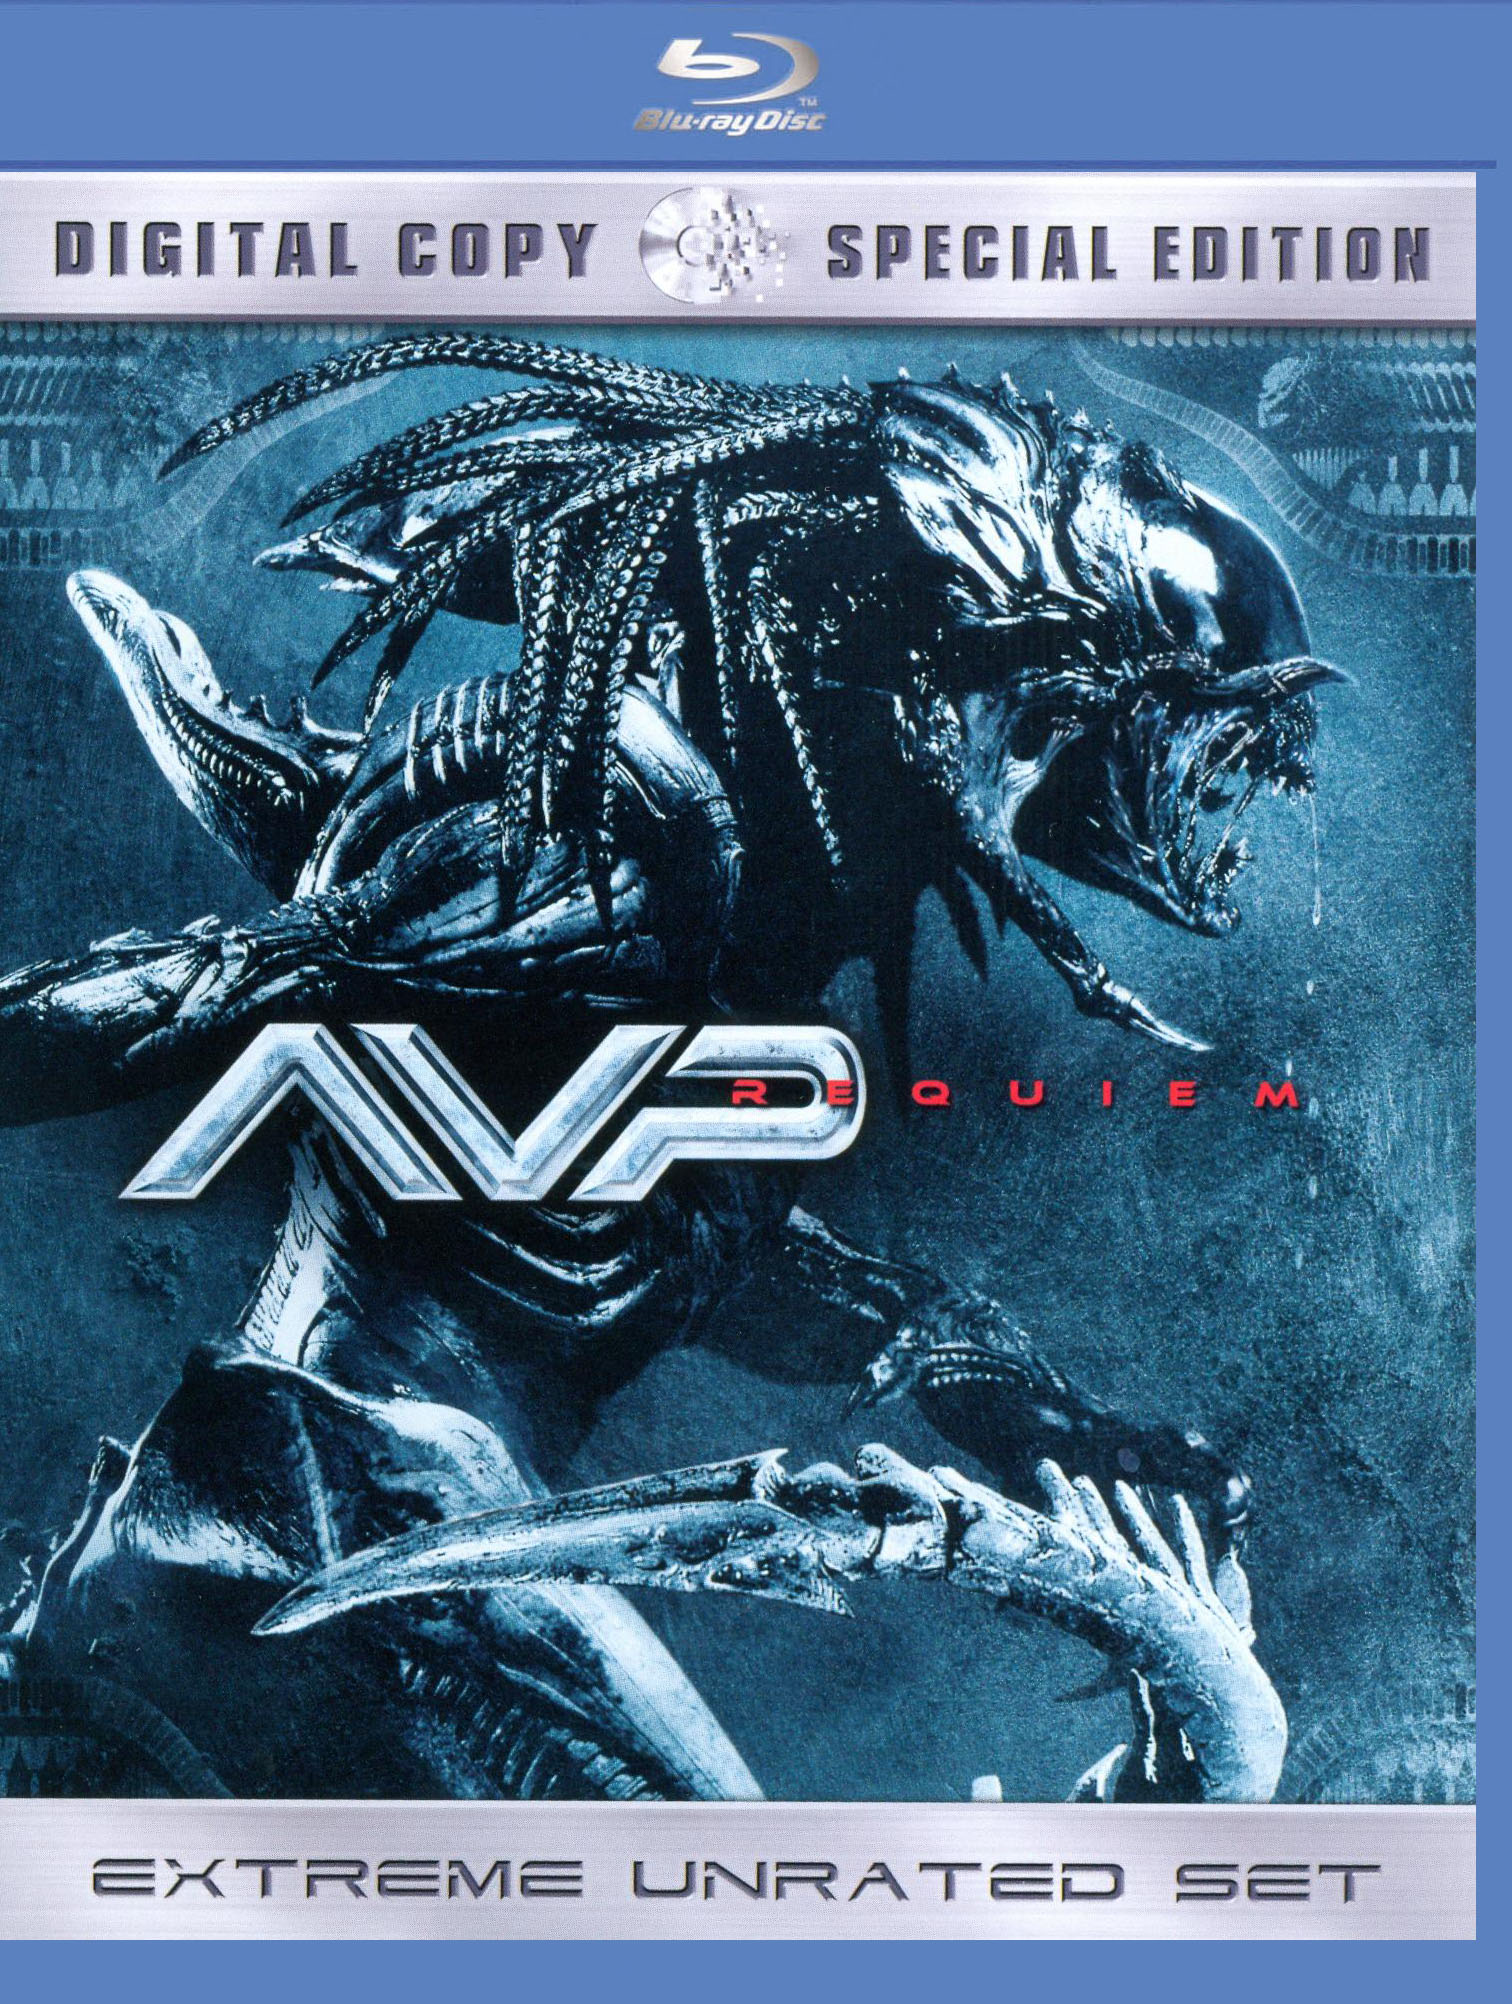 Aliens vs. Predator: Requiem - Metacritic